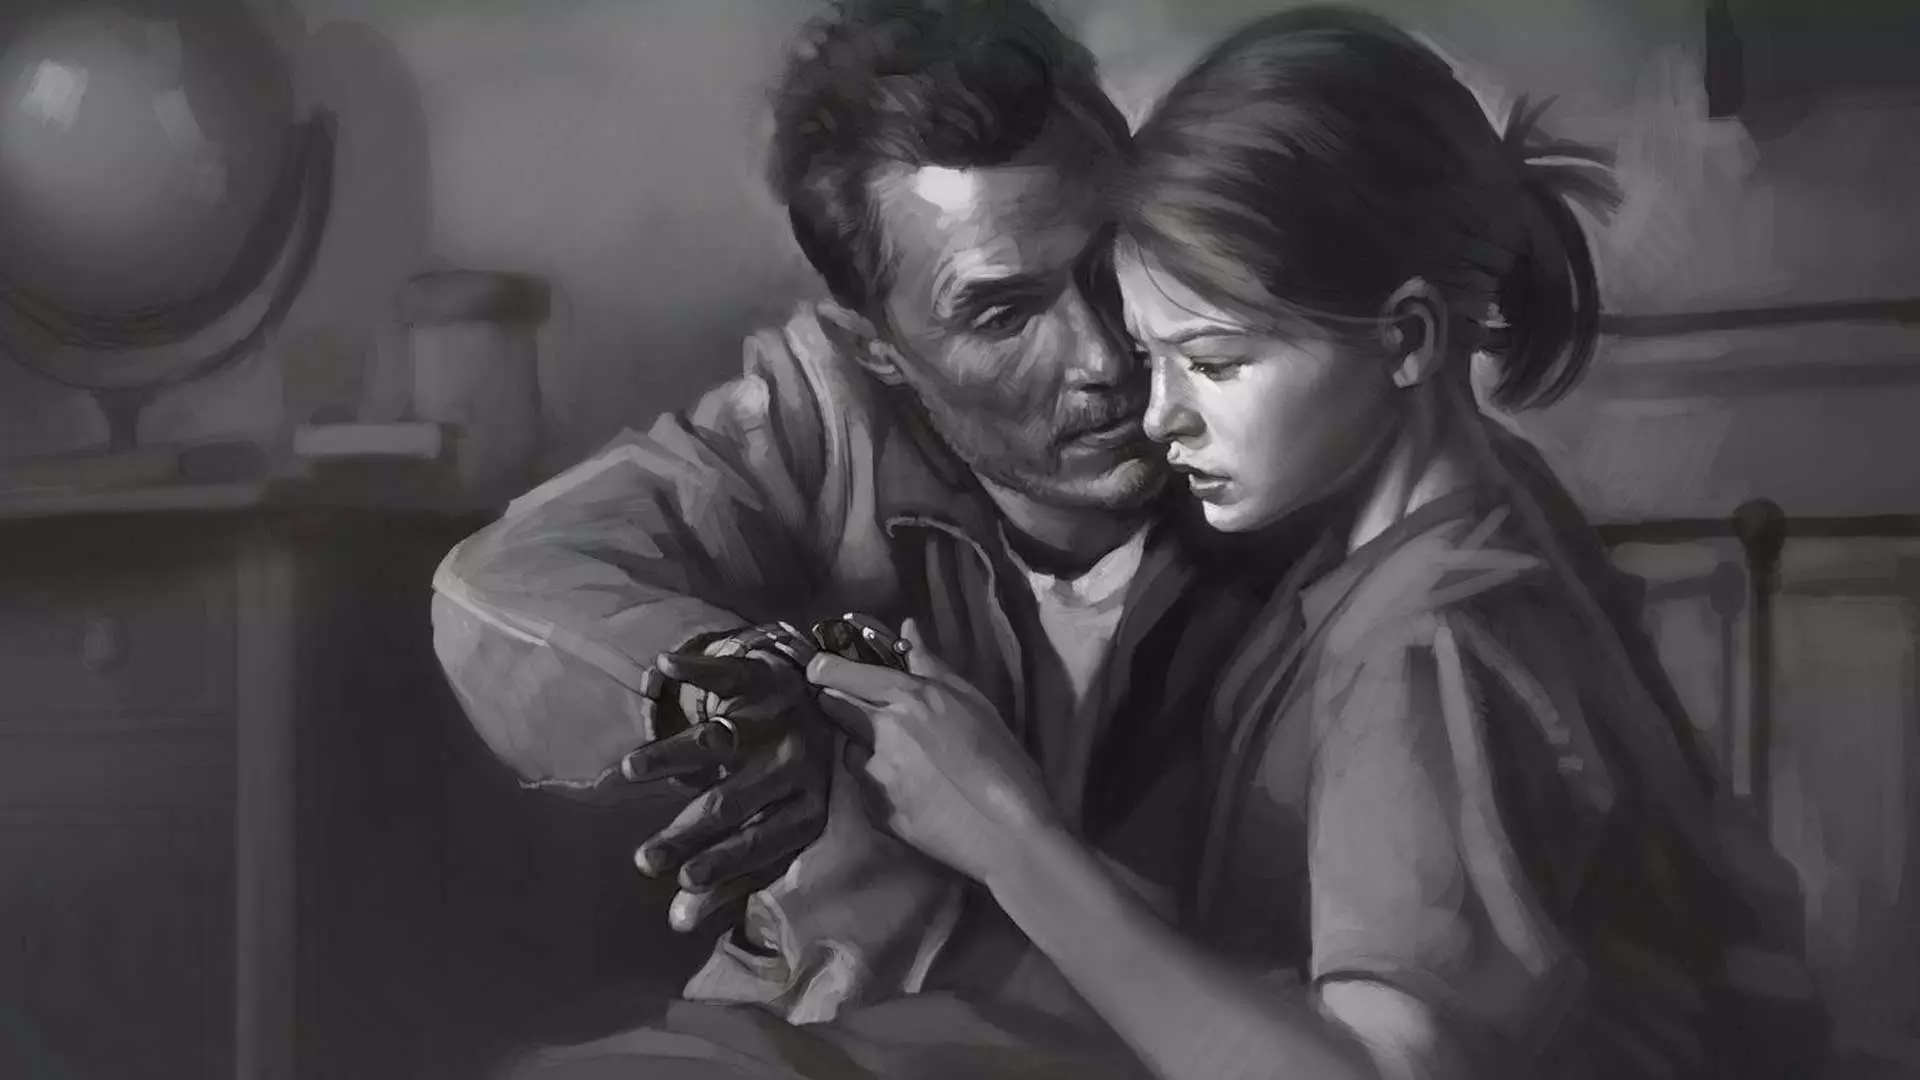 پدر در حال نشان دادن ساعت خود به دختر در فیلم Interstellar و تصویر هنری سیاه و سفید آن، شاهکار کریستوفر نولان